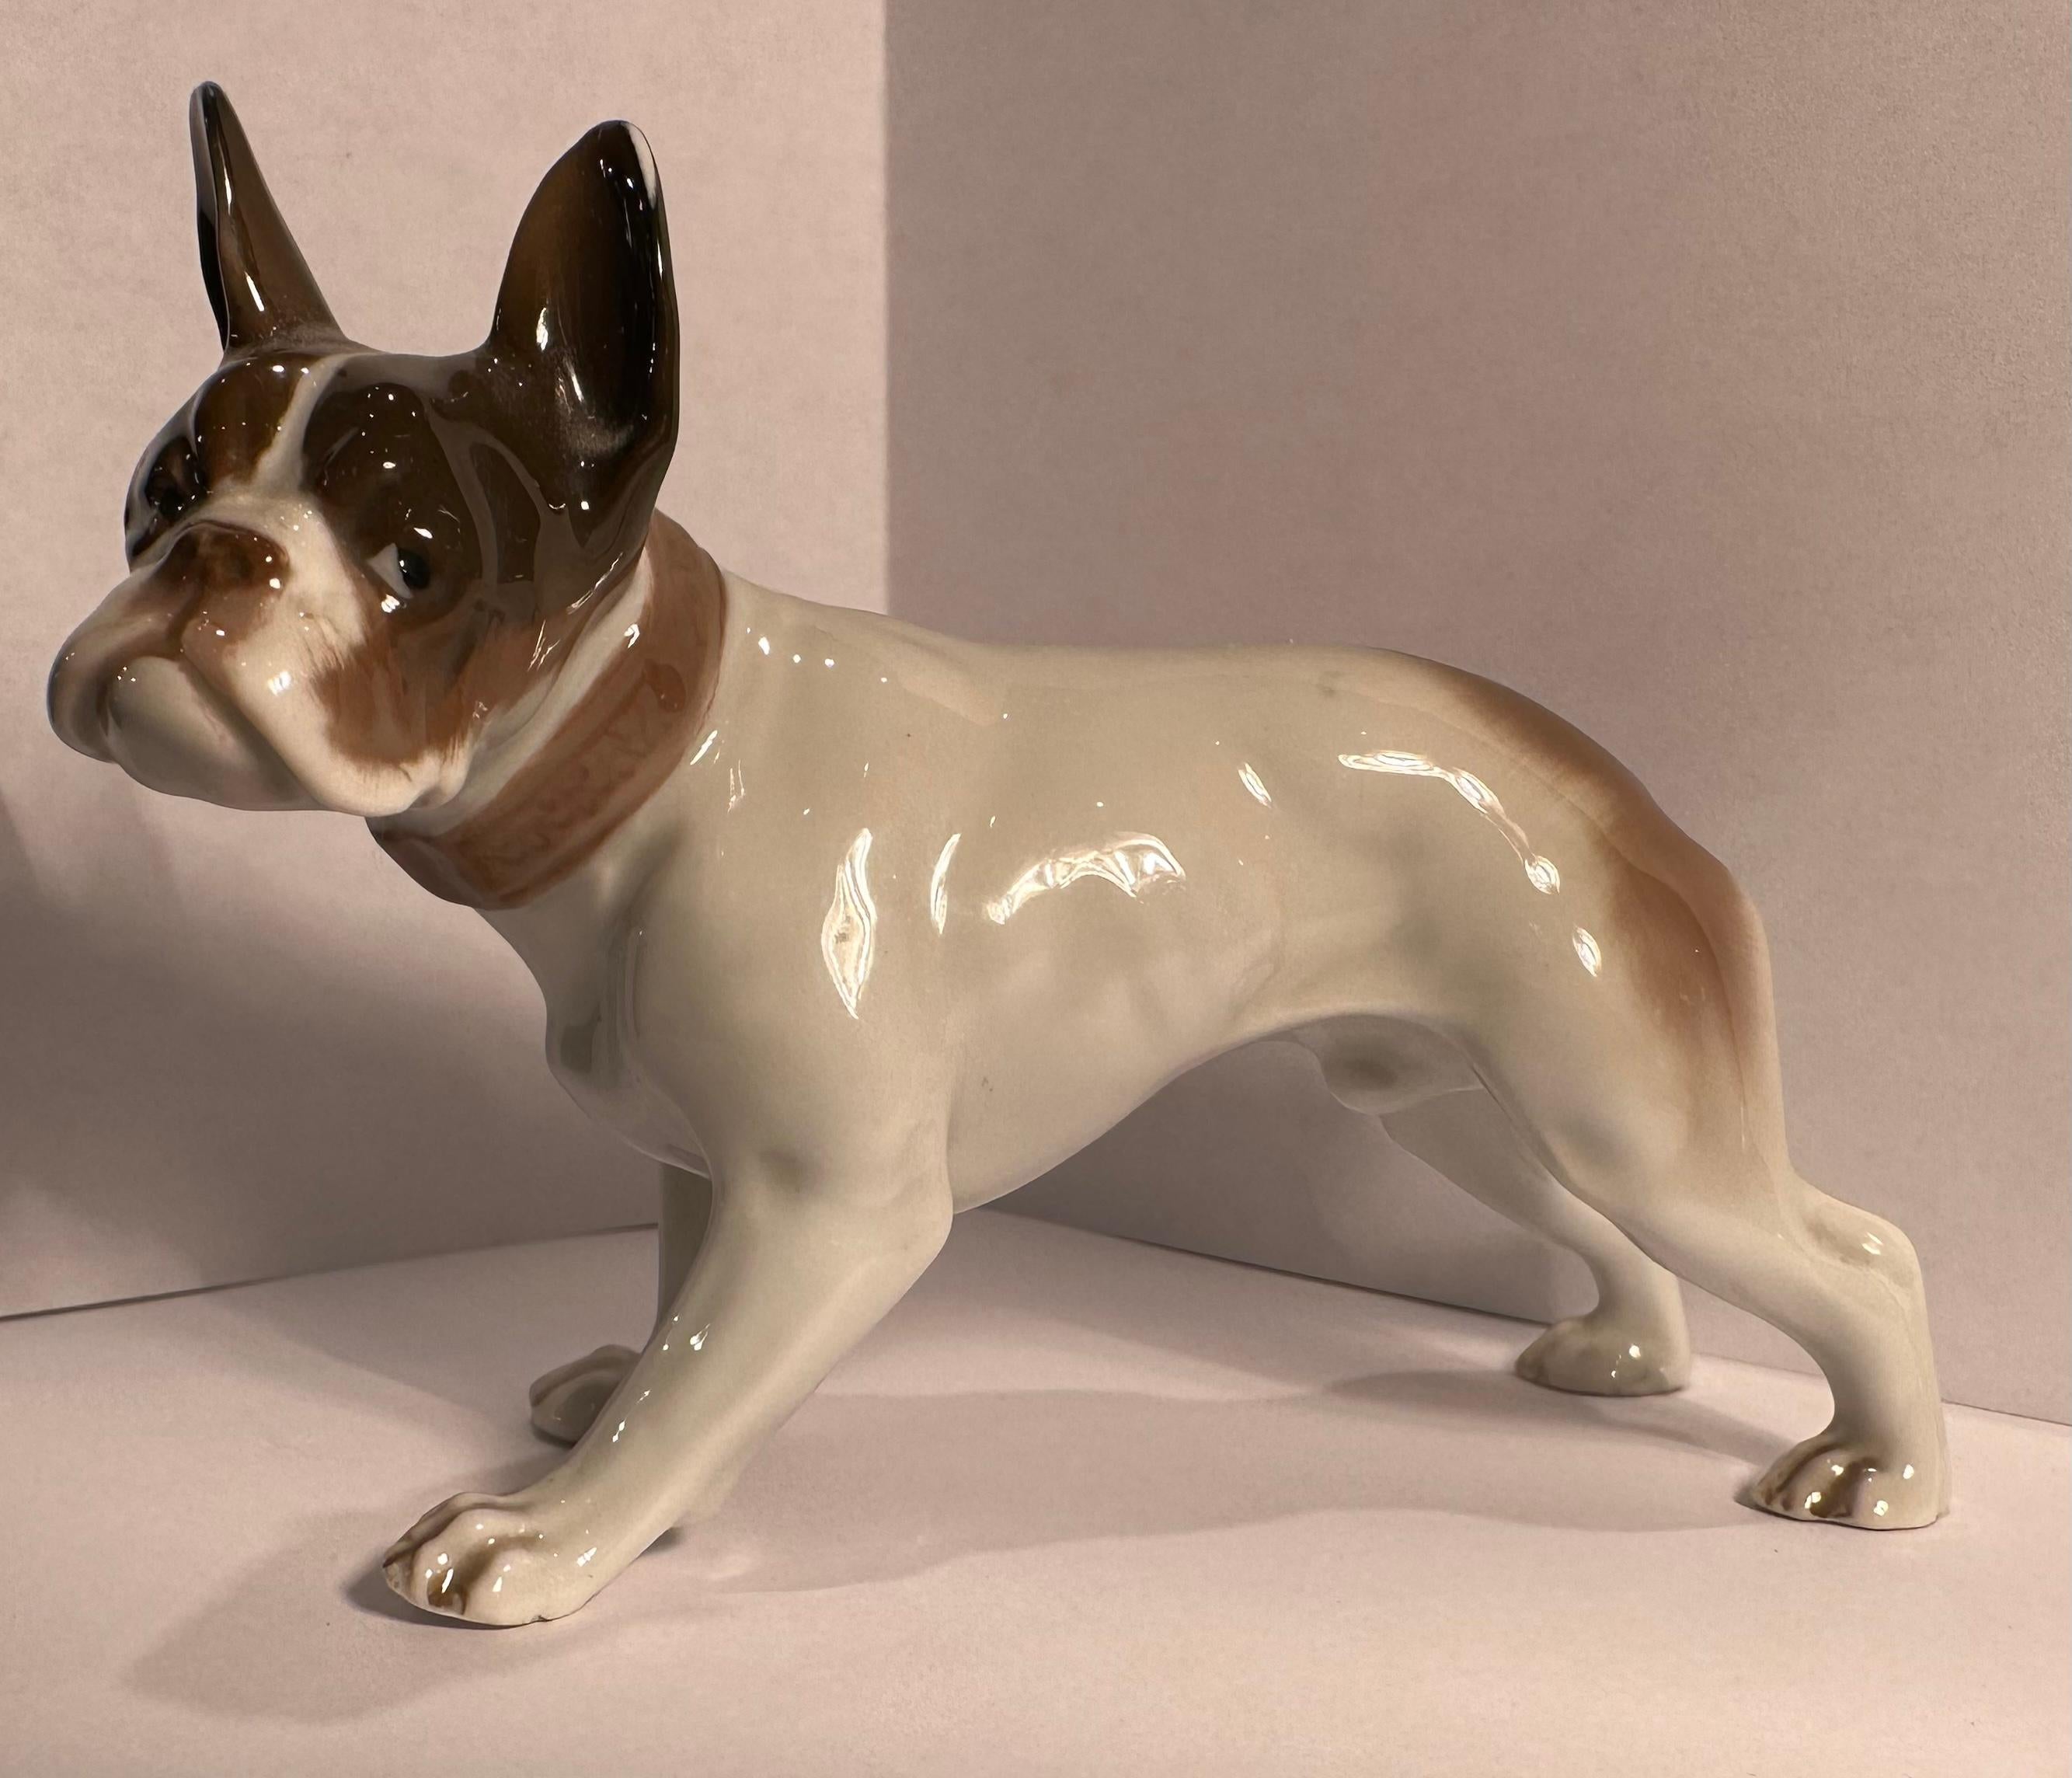 
Figurine de chien de taureau français en porcelaine de Rosenthal de la plus haute qualité, retraitée vintage, faite et peinte à la main en Allemagne. Le chien a été magistralement fabriqué et peint à la main avec une grande attention aux détails